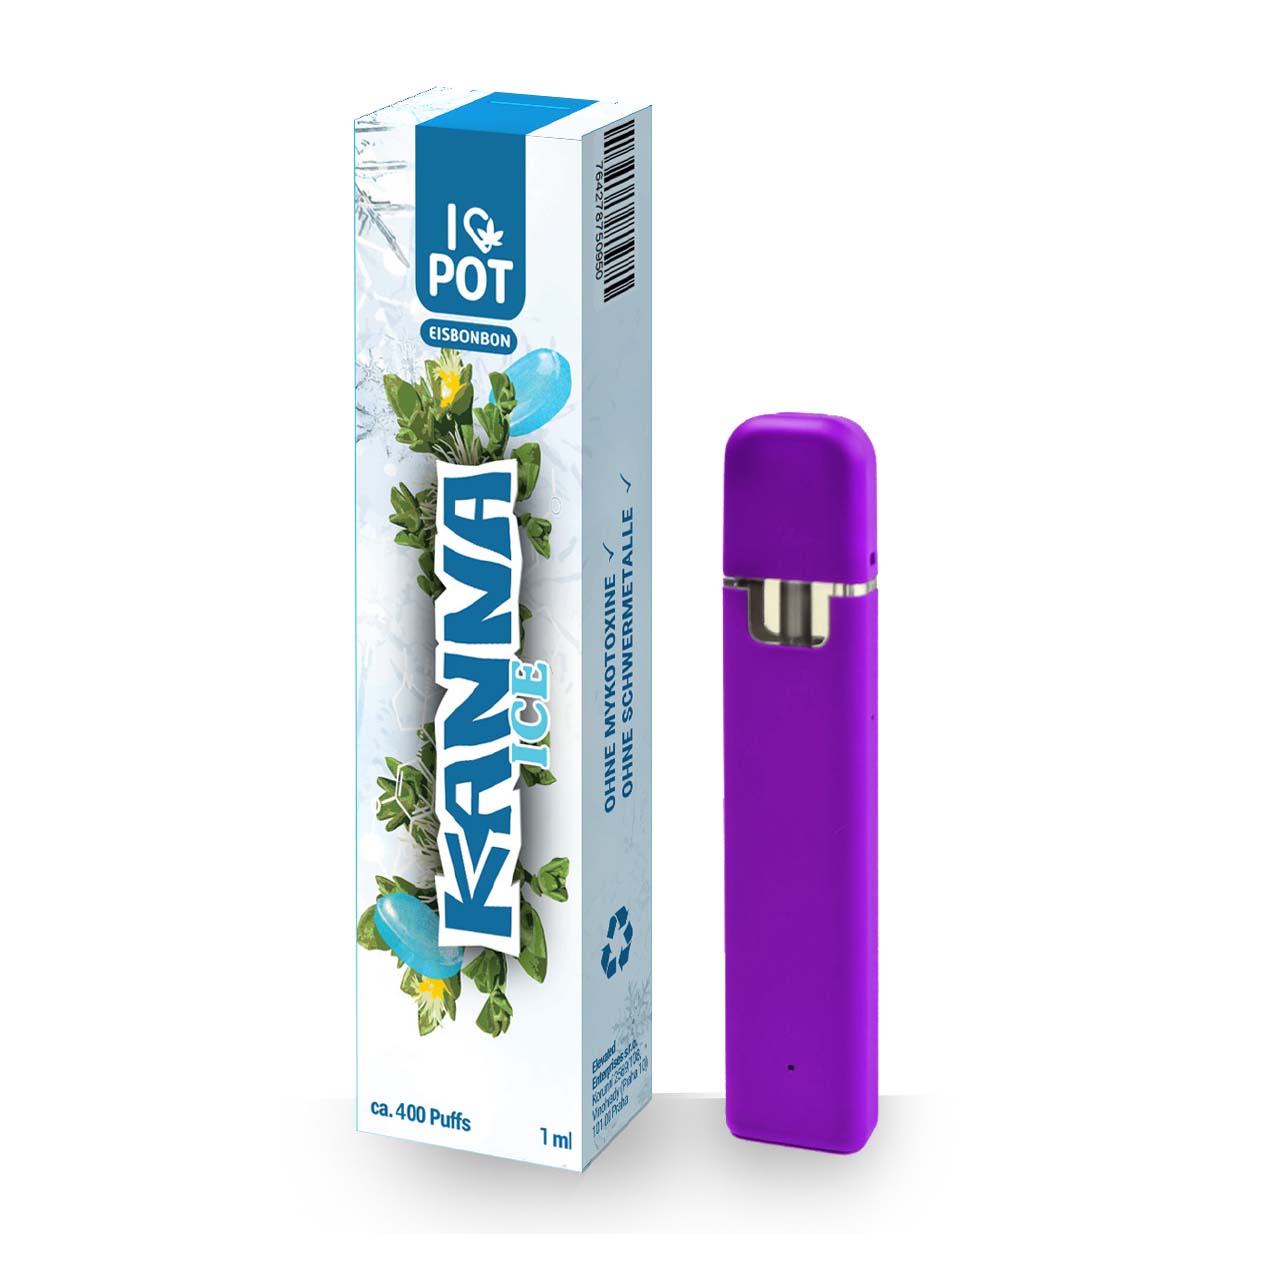 I Love Pot Kanna Vape Einweg E-Zigarette - Ice Bonbon - 1ml